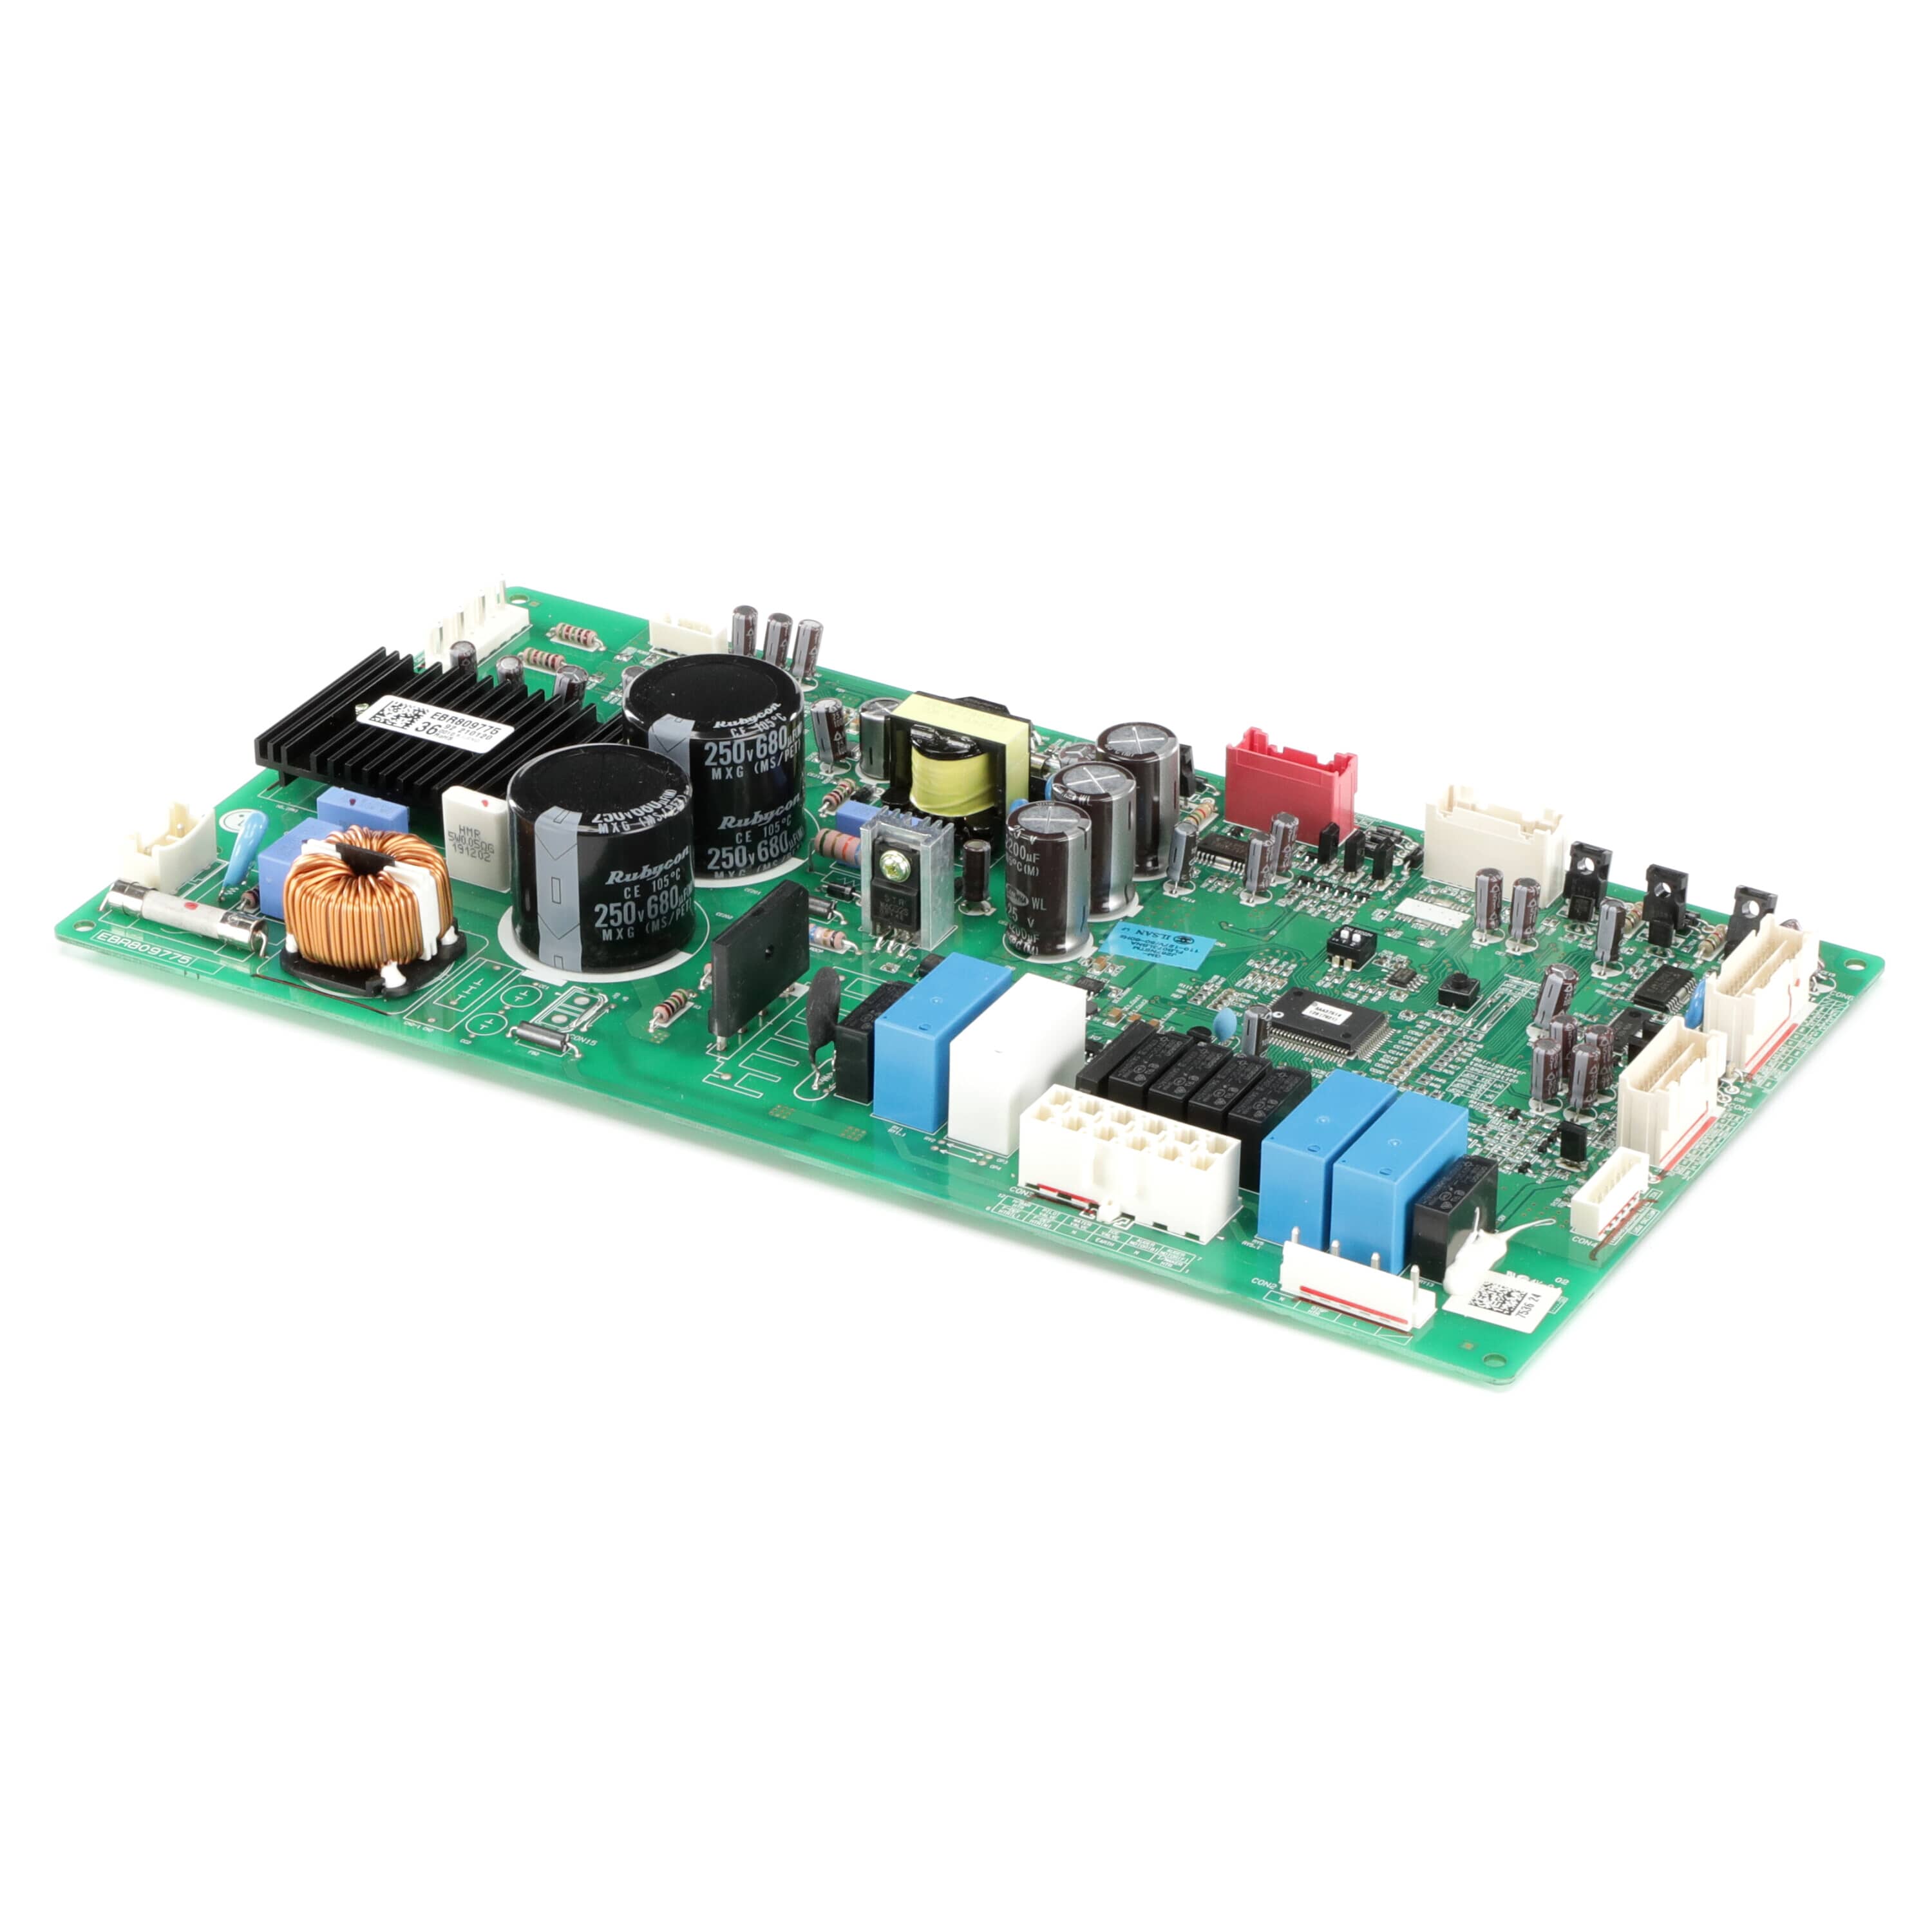 LG EBR80977536 Refrigerator Electronic Control Board